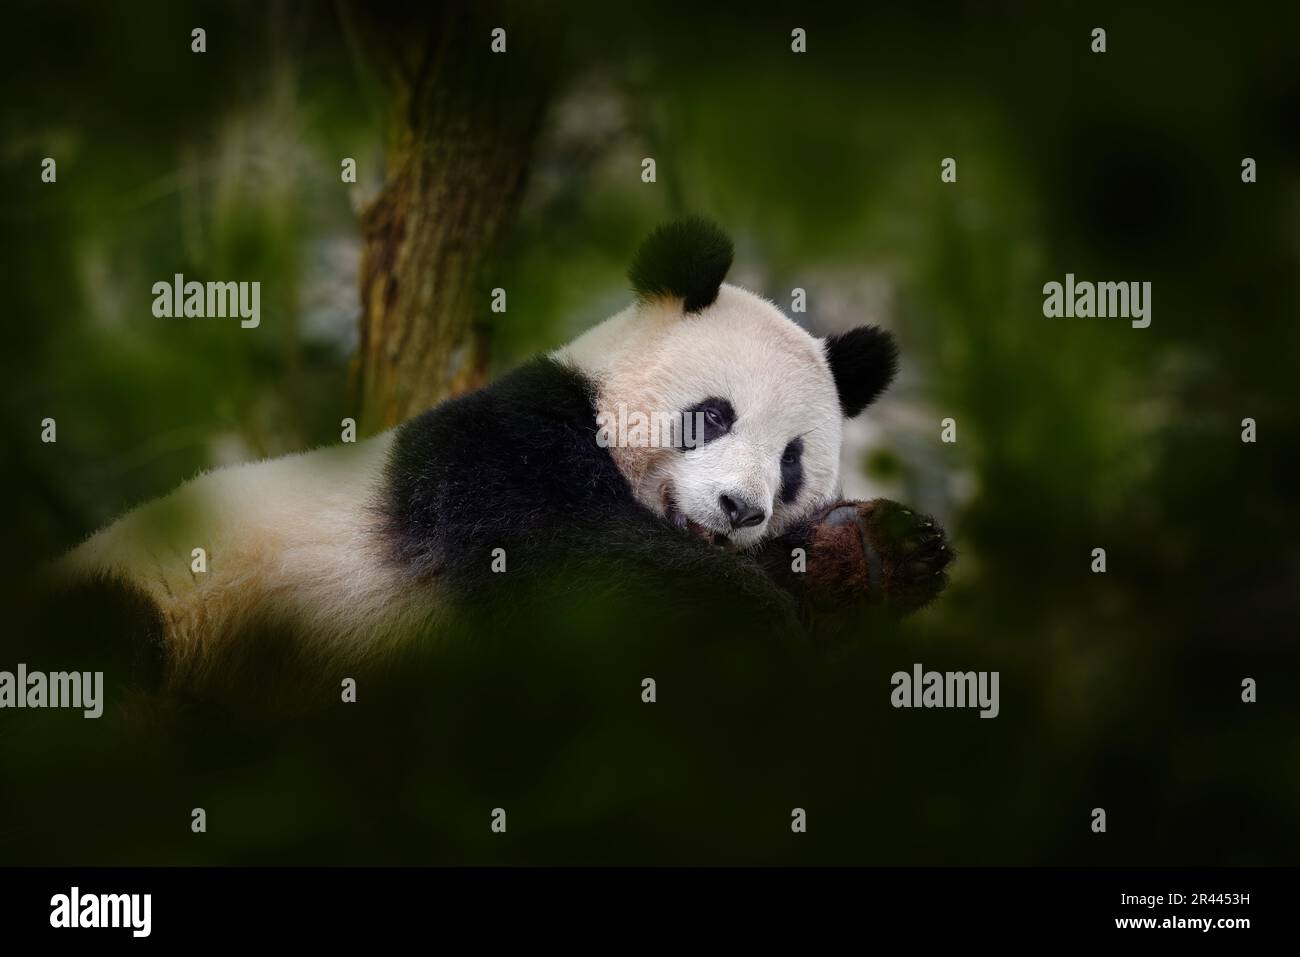 Panda comportamento orso nell'habitat naturale. Ritratto panda gigante, Ailuropoda melanoleuca, nutrirsi di bambù in verde vegetazione. Dettaglio verticale Foto Stock